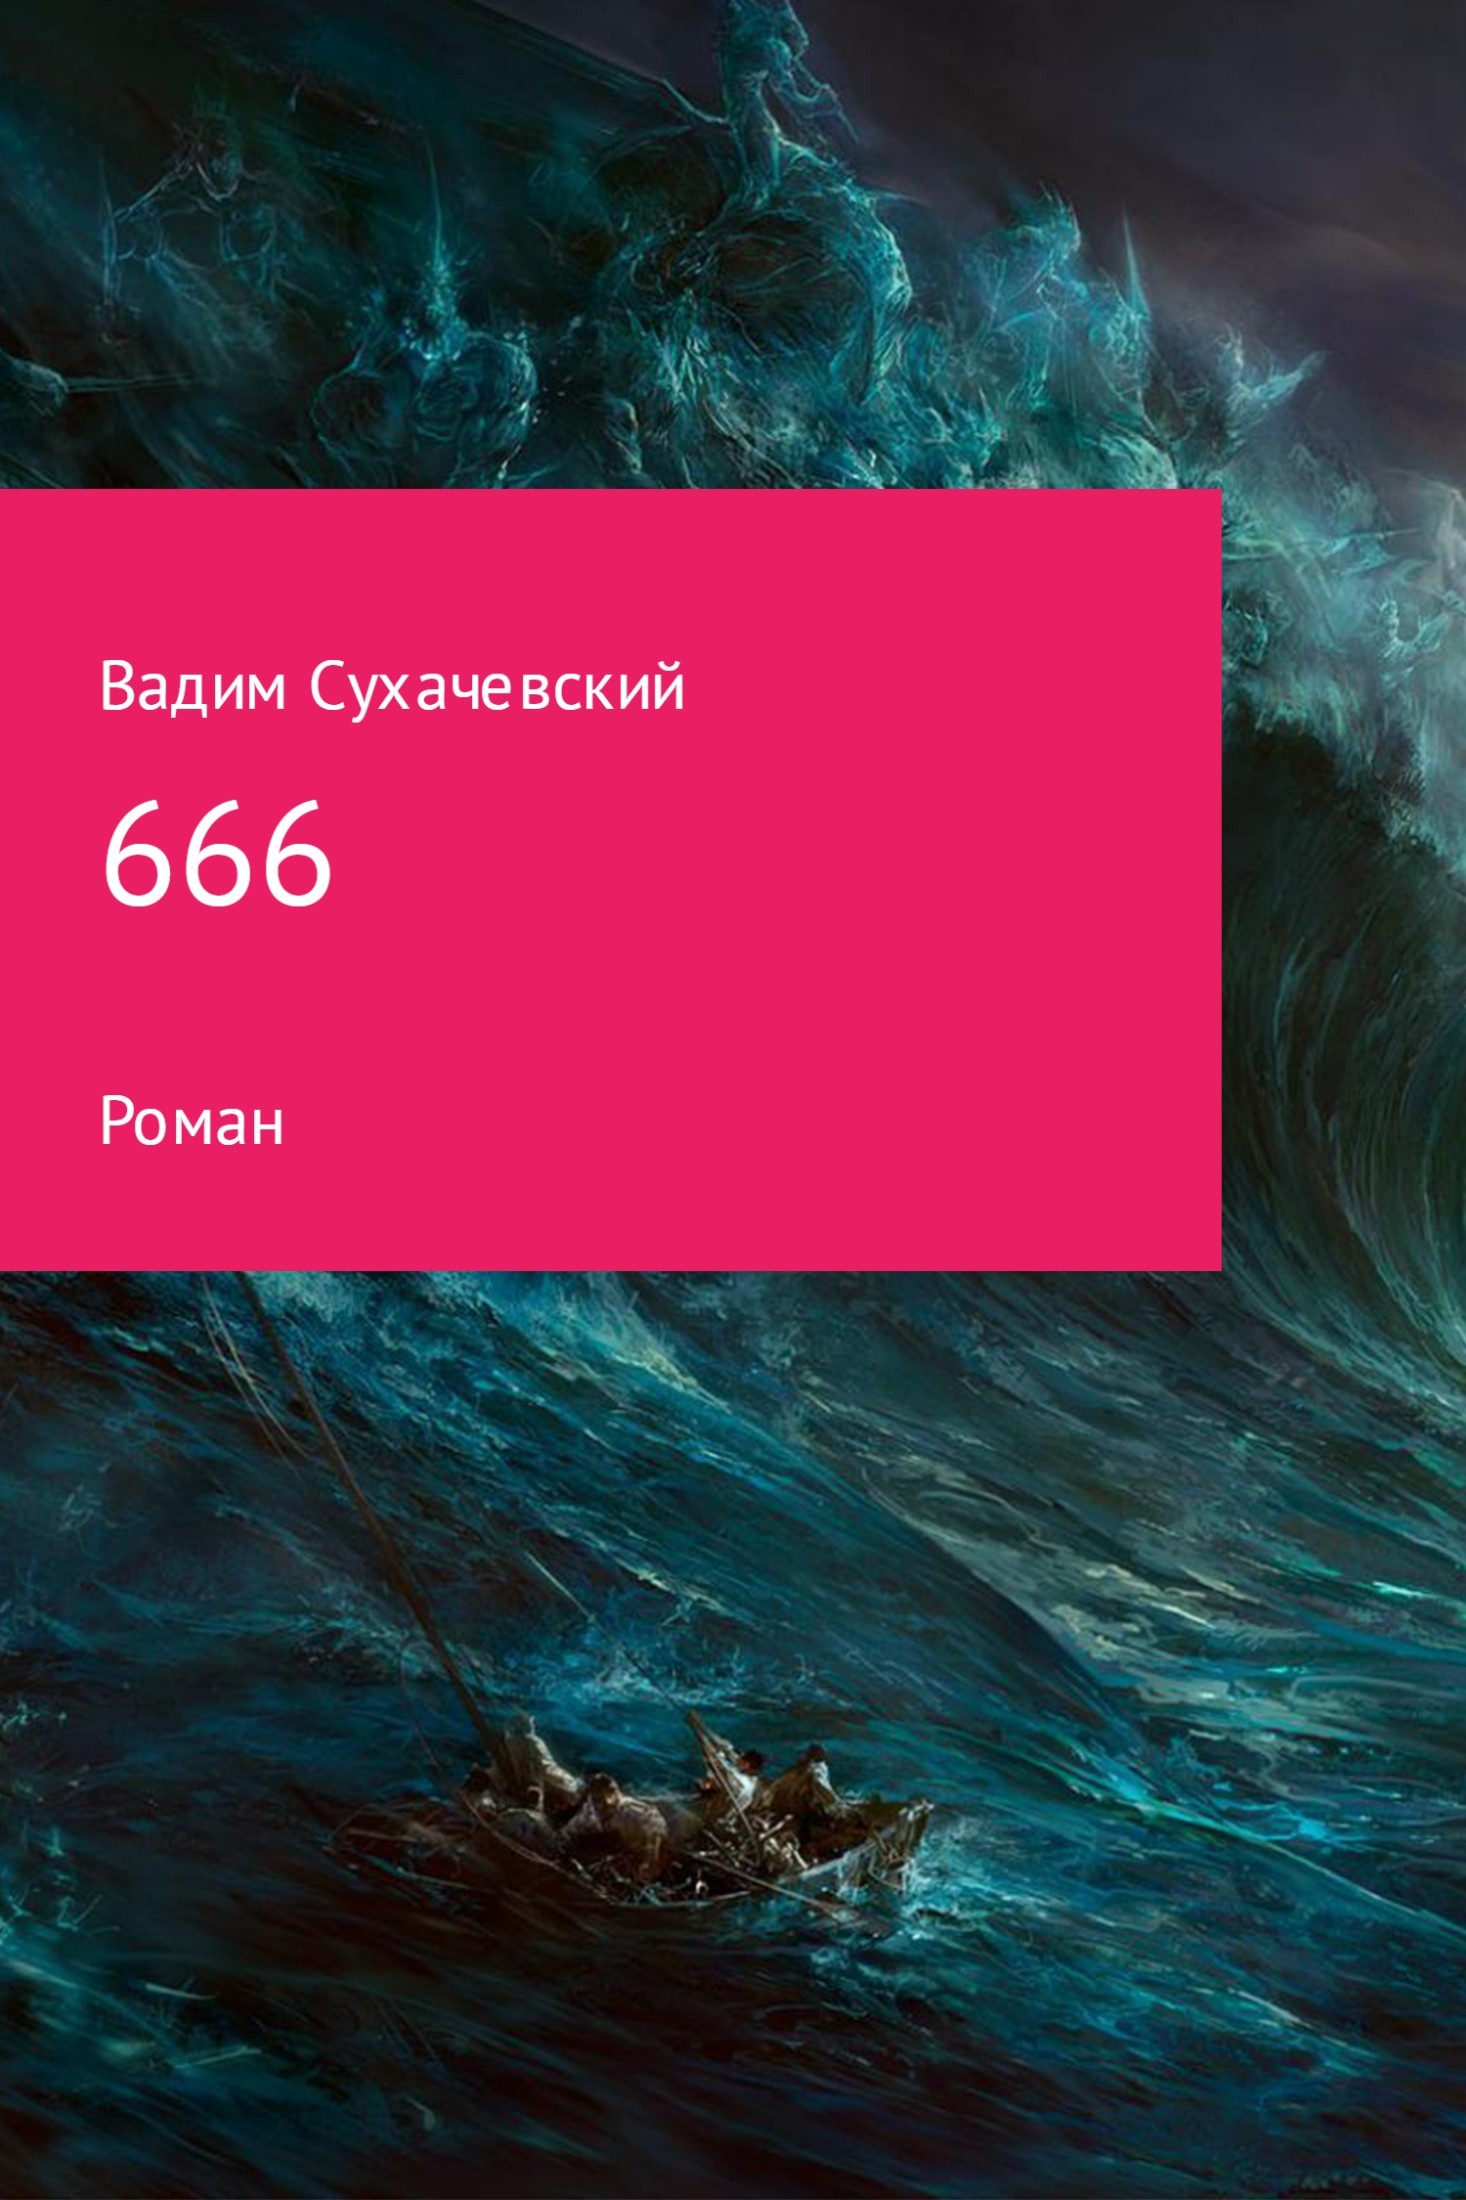 Скачать 666 - Вадим Вольфович Сухачевский